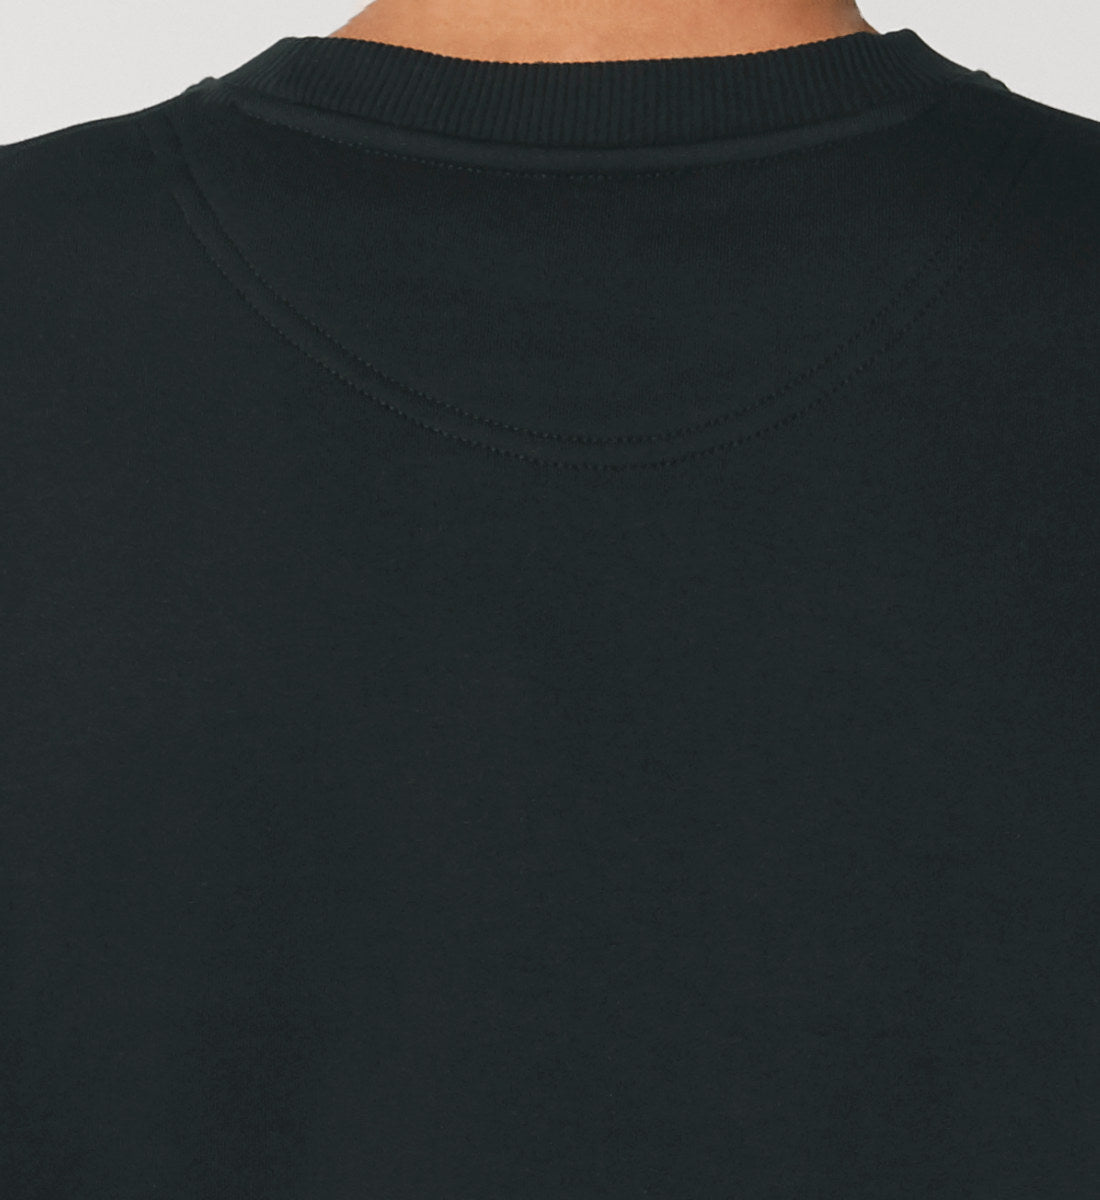 Schwarzes Sweatshirt Unisex für Frauen und Männer bedruckt mit dem Design der Roger Rockawoo Kollektion e-guitar shredding Culture Community